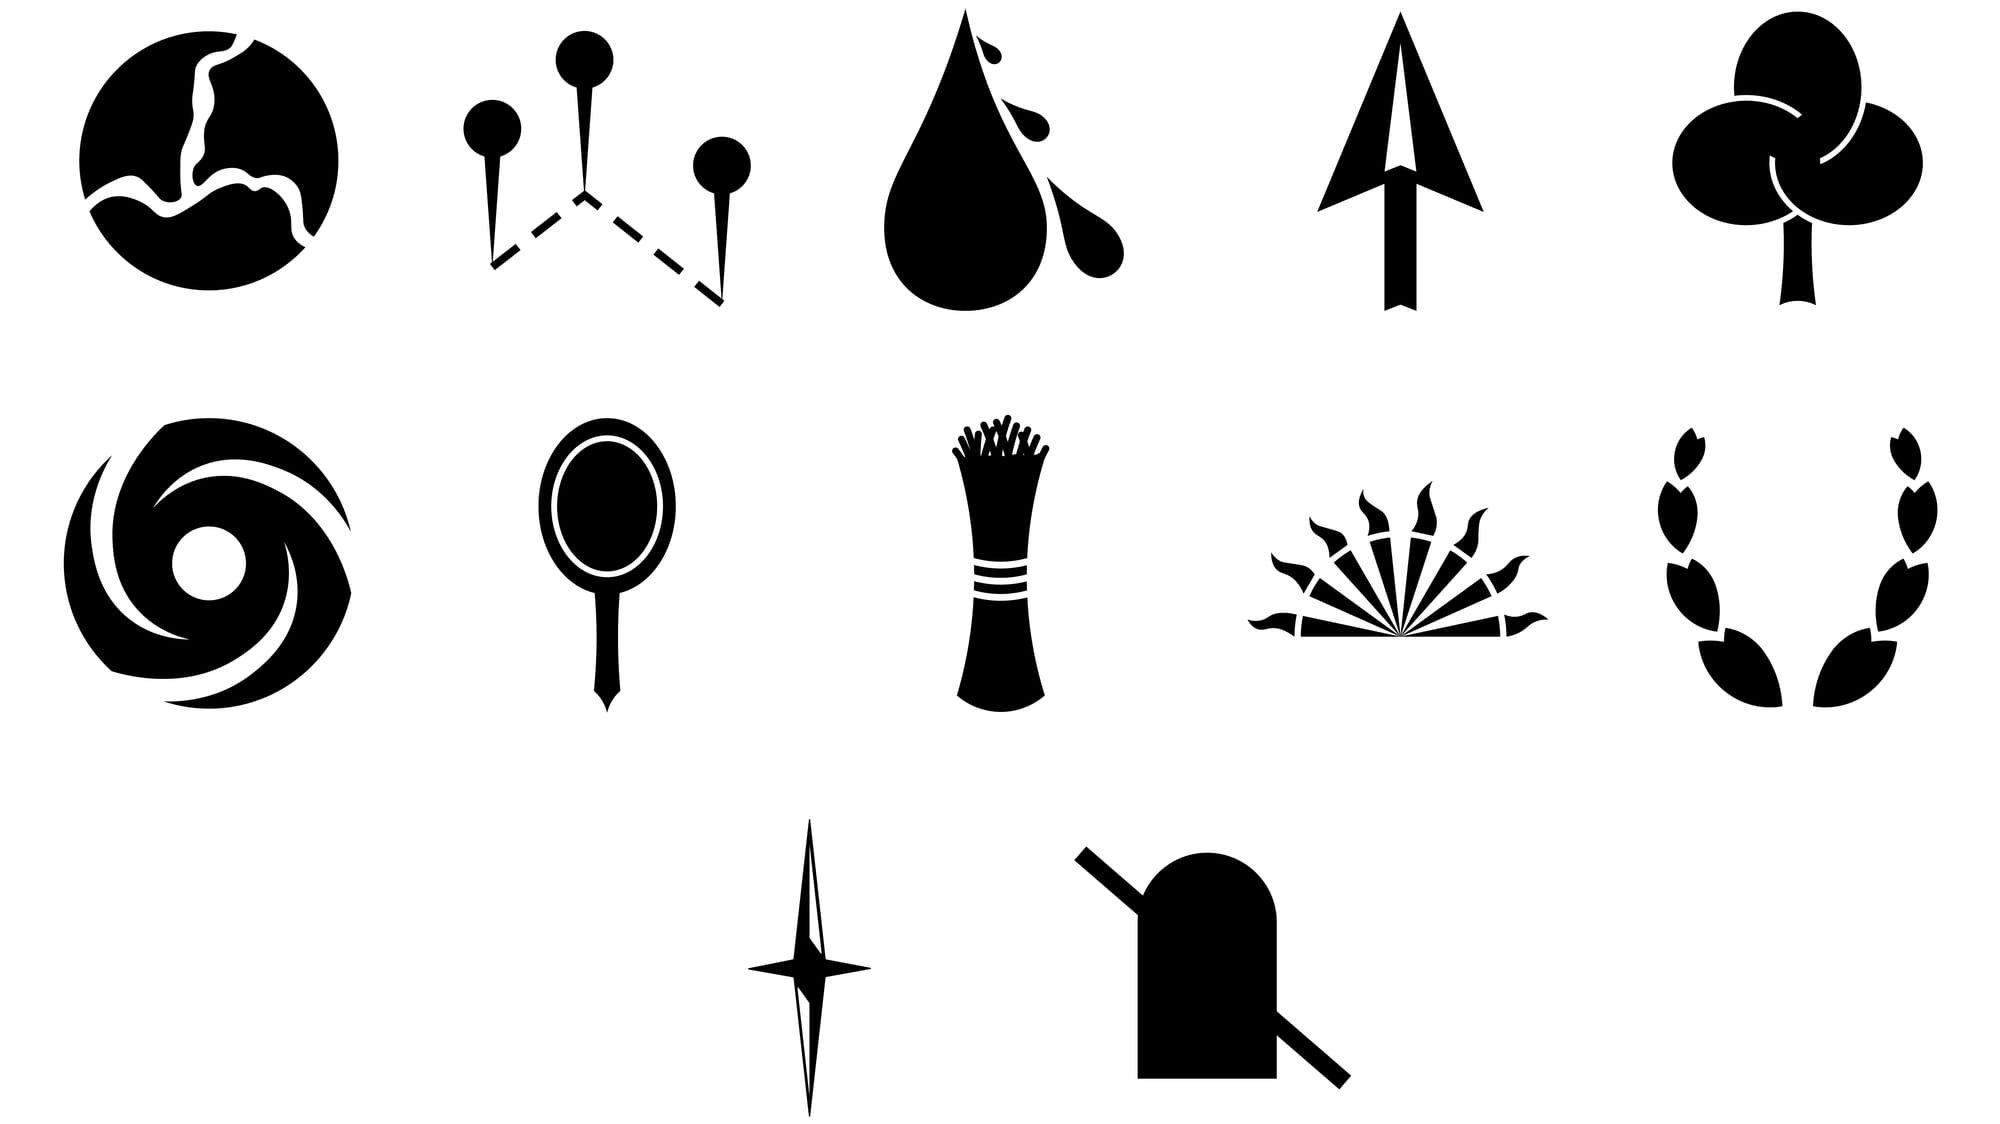 Titanomachy symbols